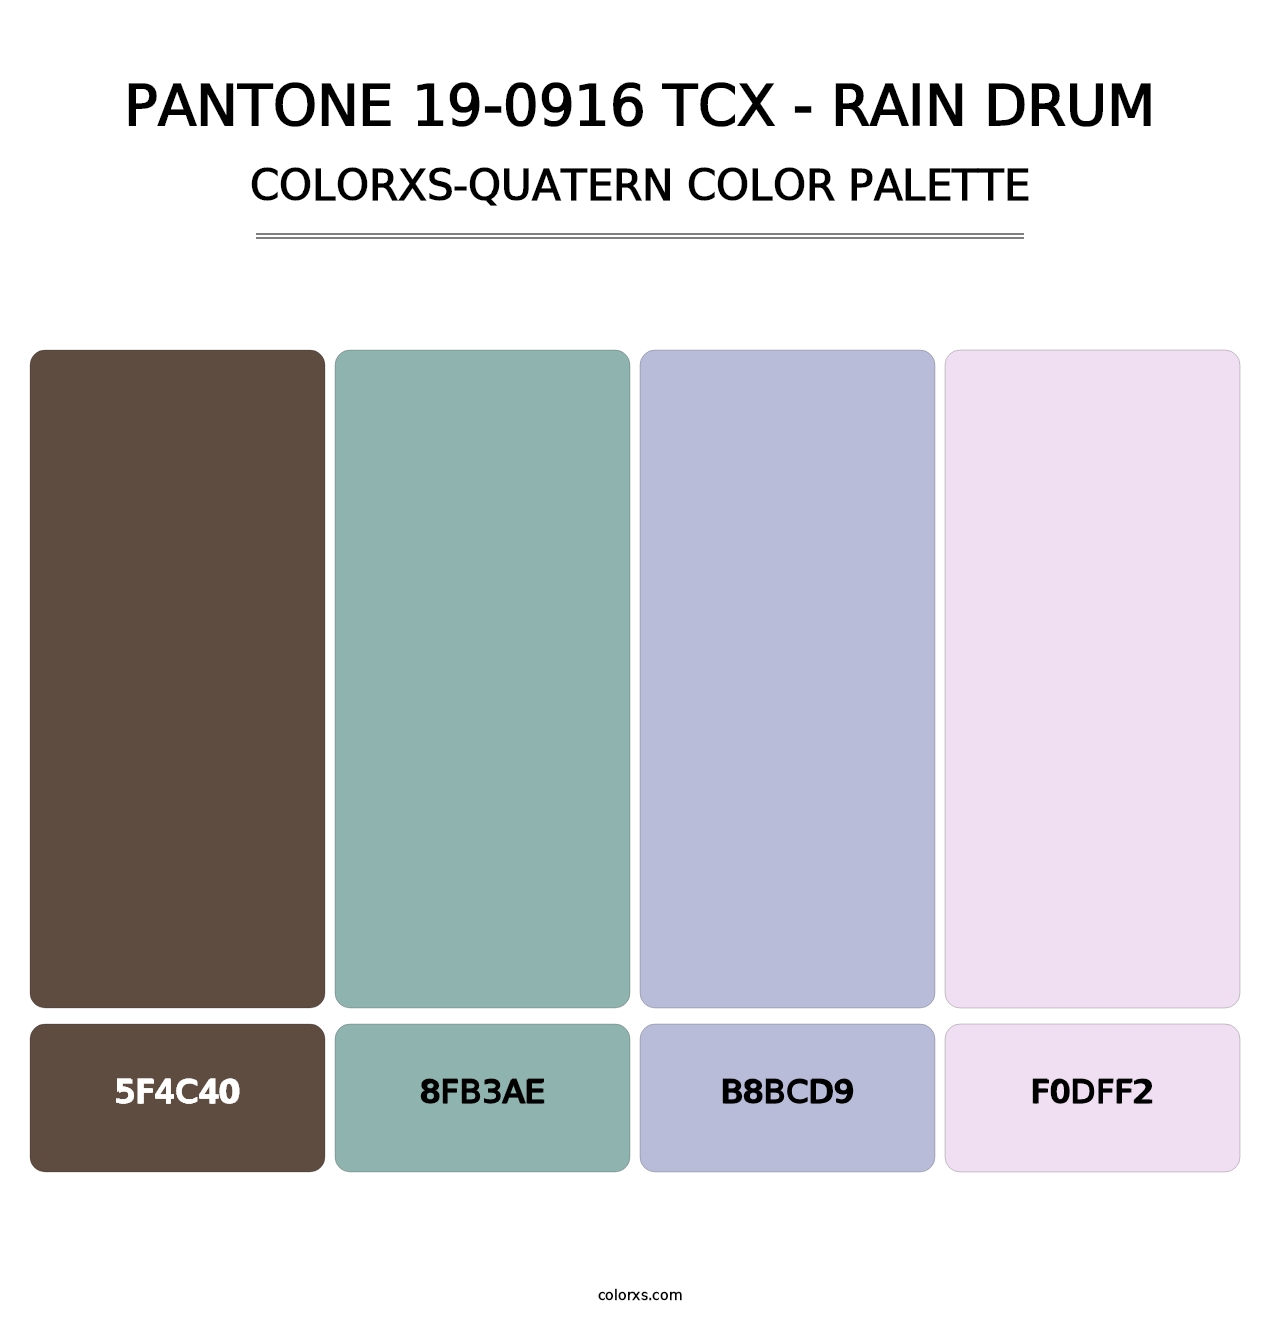 PANTONE 19-0916 TCX - Rain Drum - Colorxs Quatern Palette